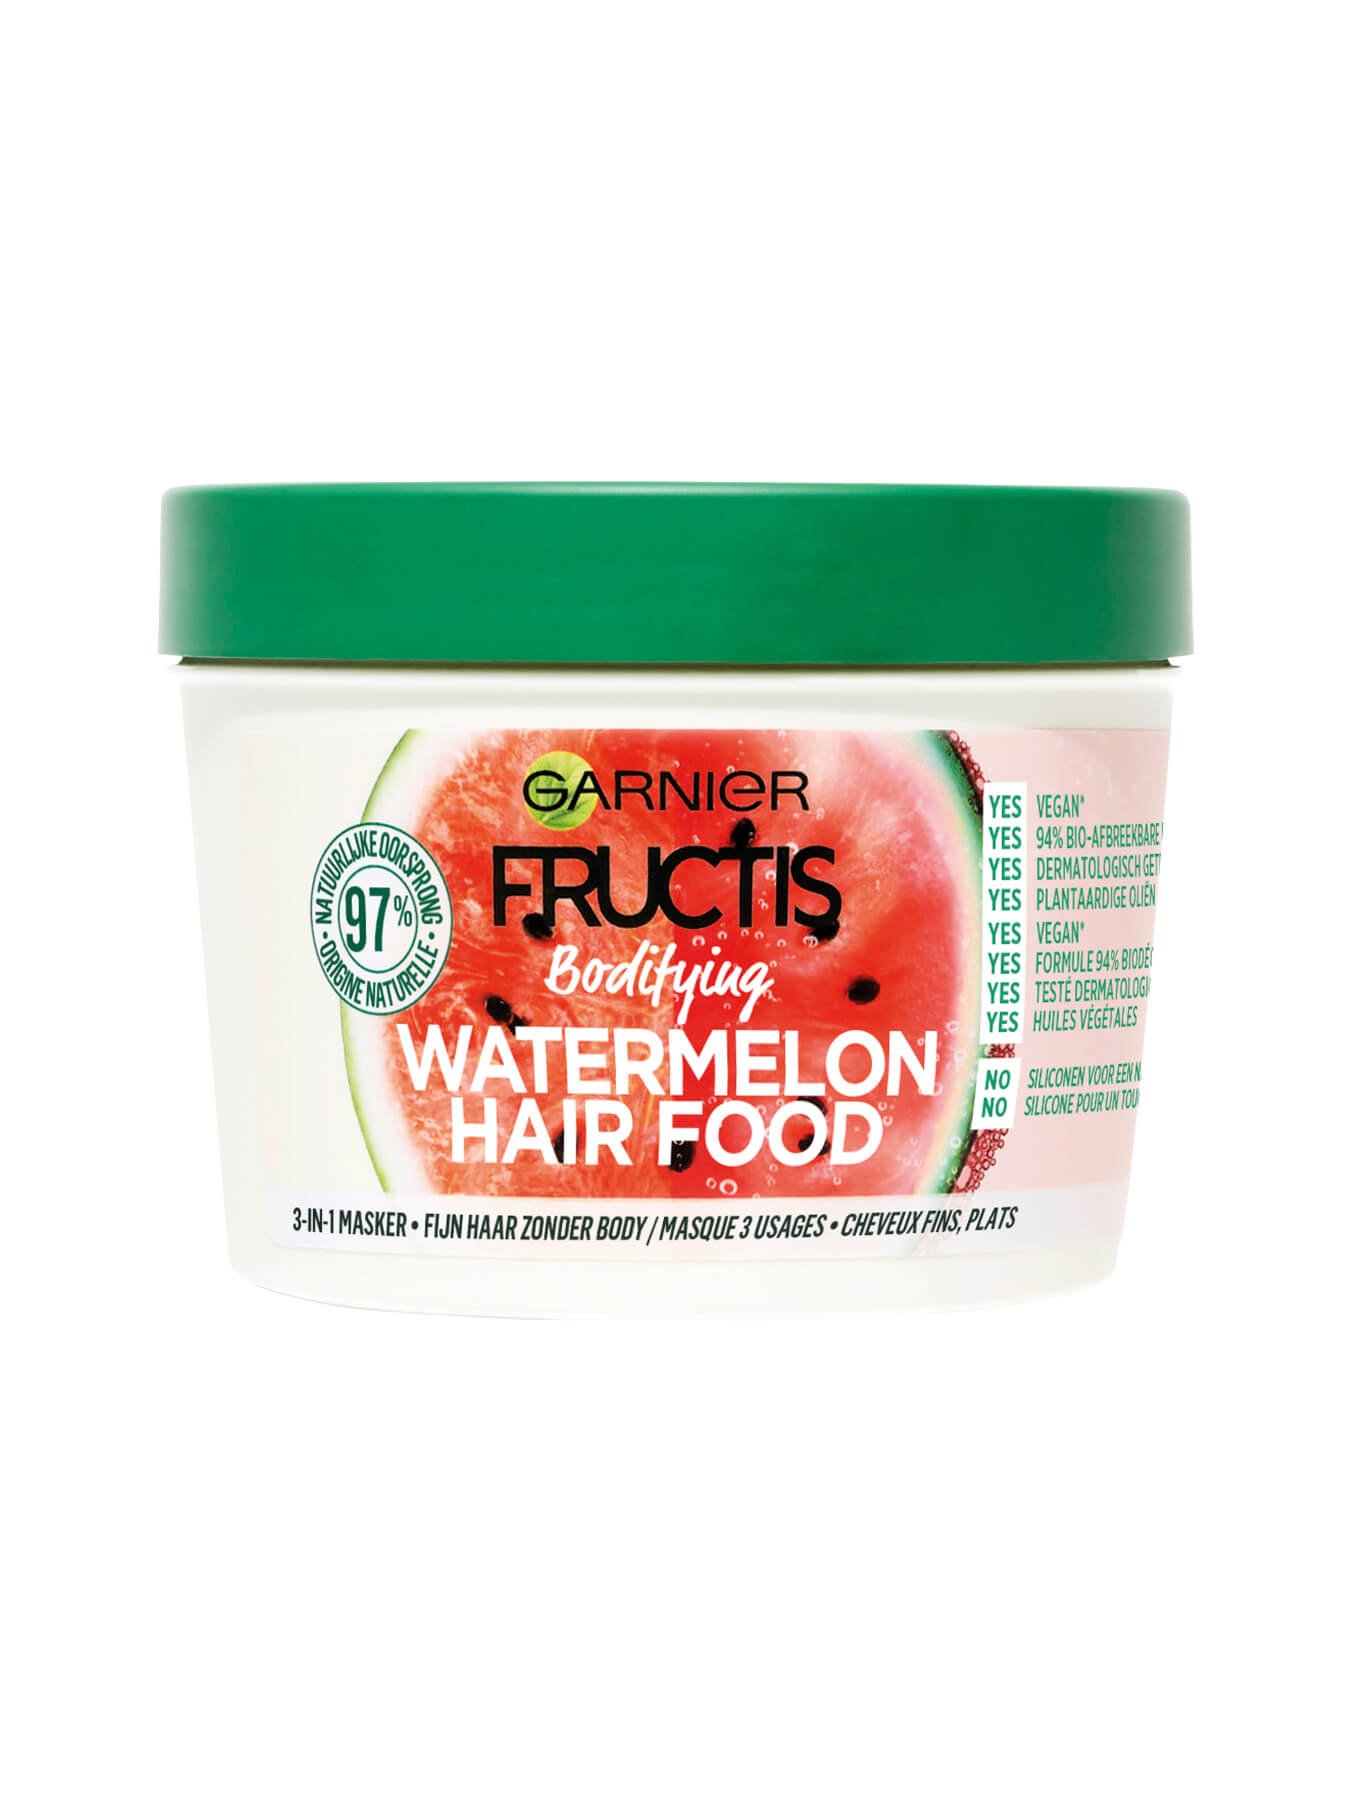 2020 07 02 GARNIER Fructis packshot EU mask watermelon face 1350x1800